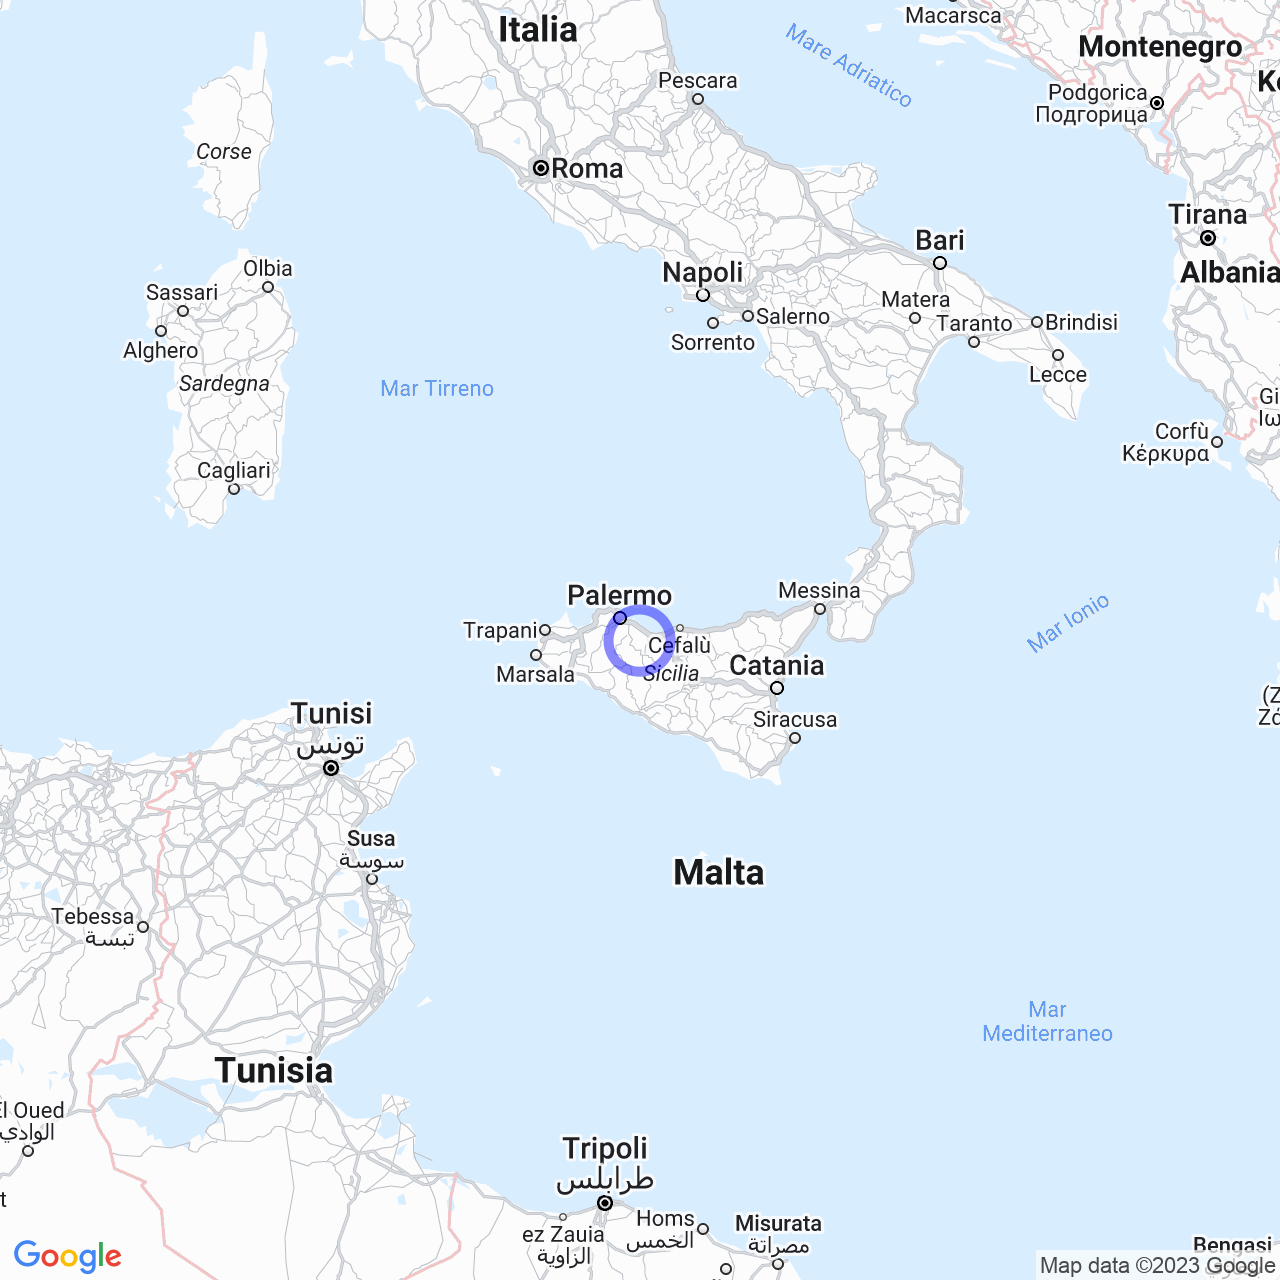 Scopri Ventimiglia di Sicilia: storia, geografia e natura